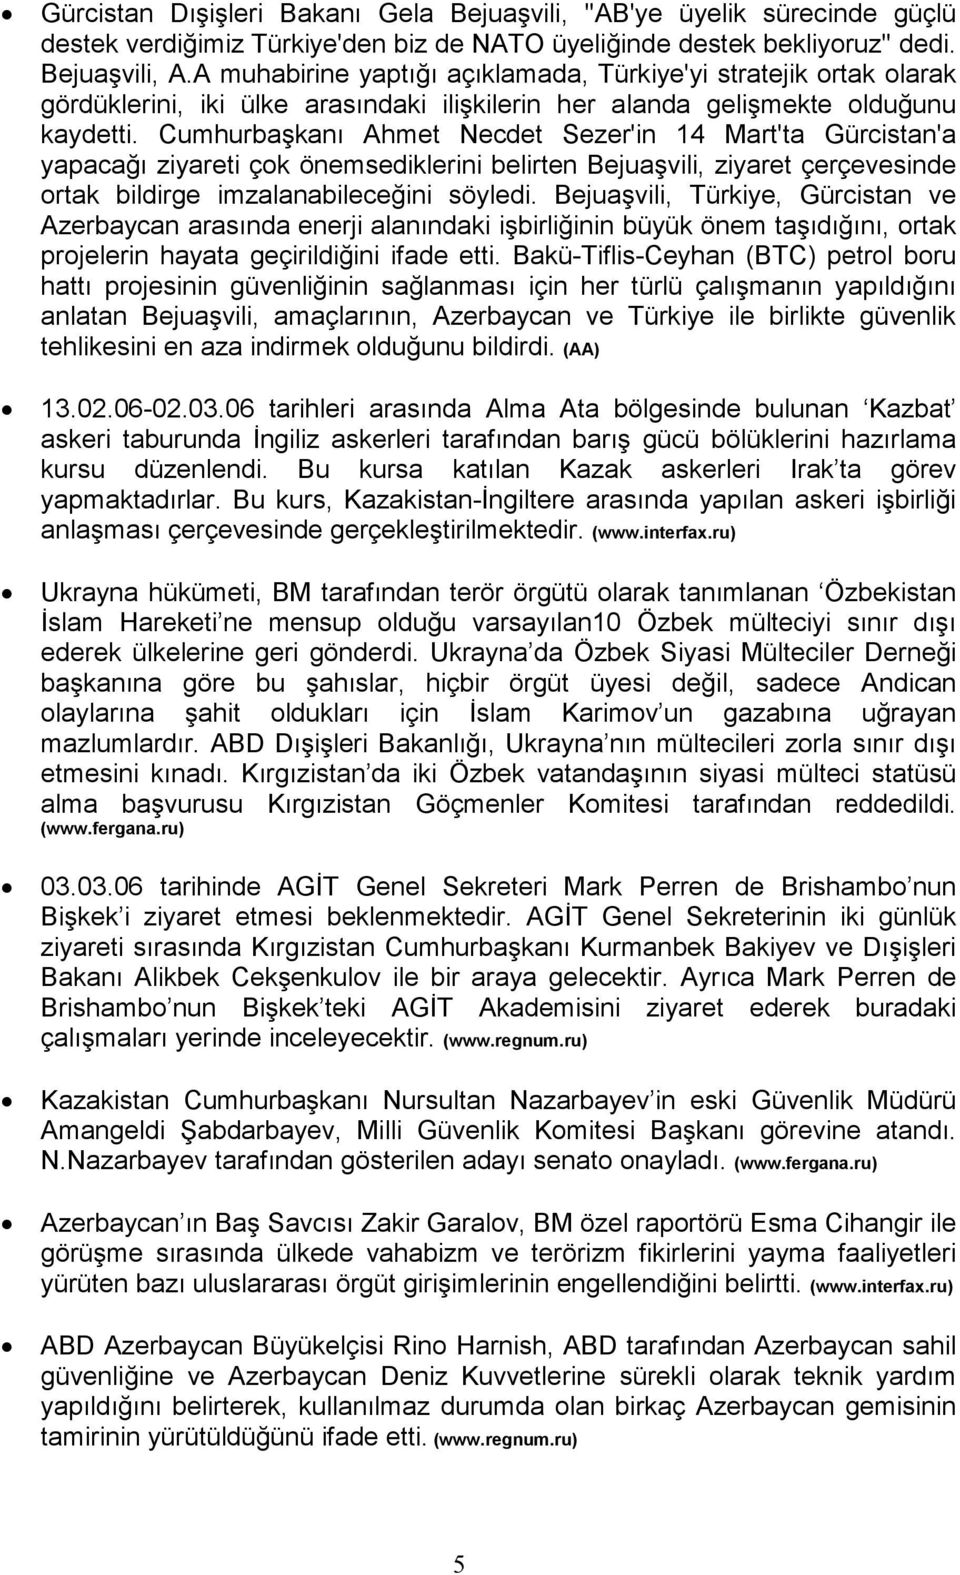 Cumhurbaşkanı Ahmet Necdet Sezer'in 14 Mart'ta Gürcistan'a yapacağı ziyareti çok önemsediklerini belirten Bejuaşvili, ziyaret çerçevesinde ortak bildirge imzalanabileceğini söyledi.